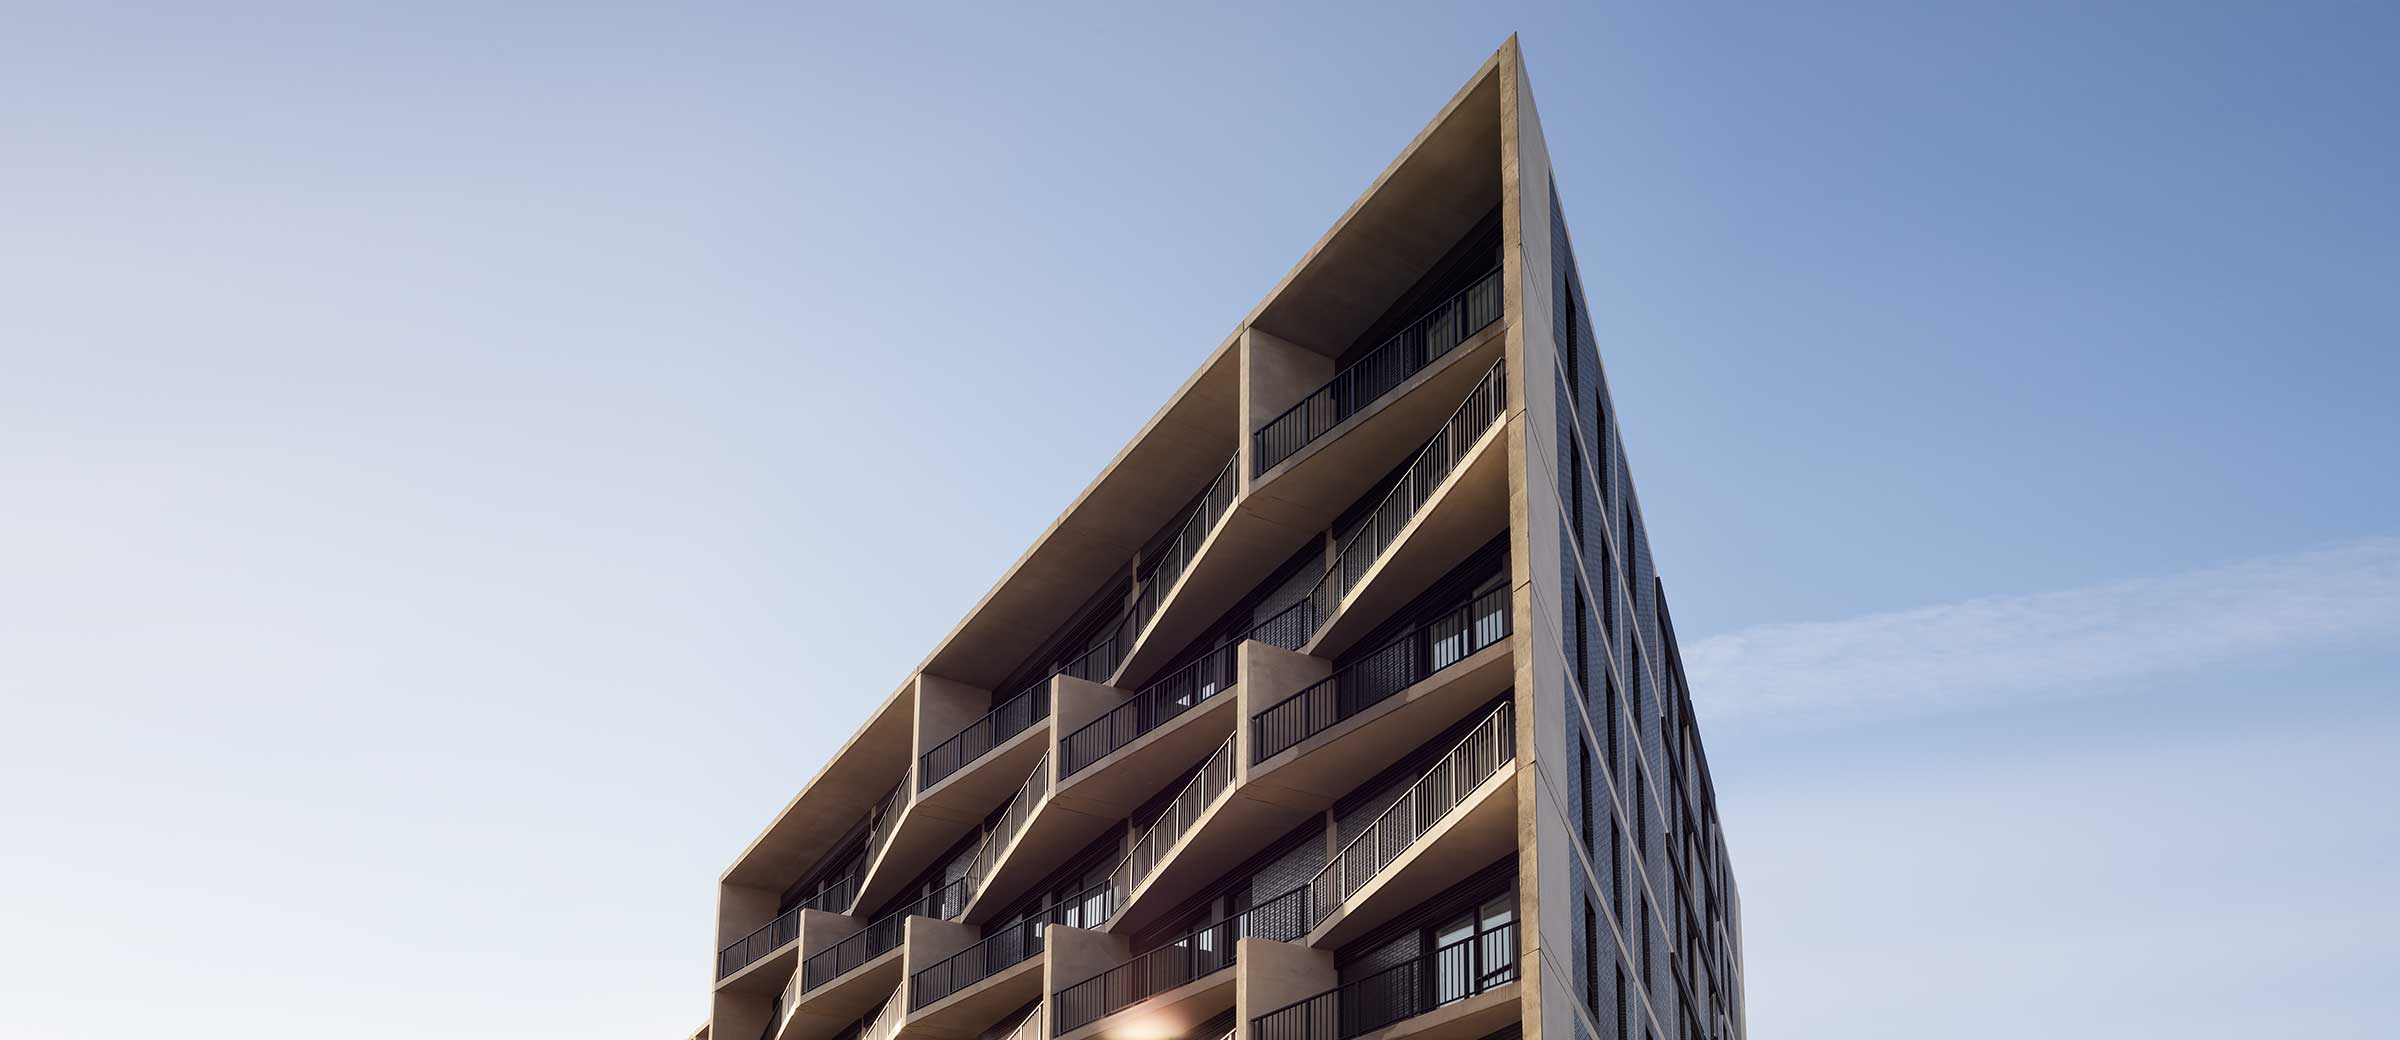 Condominium with isometric terraces